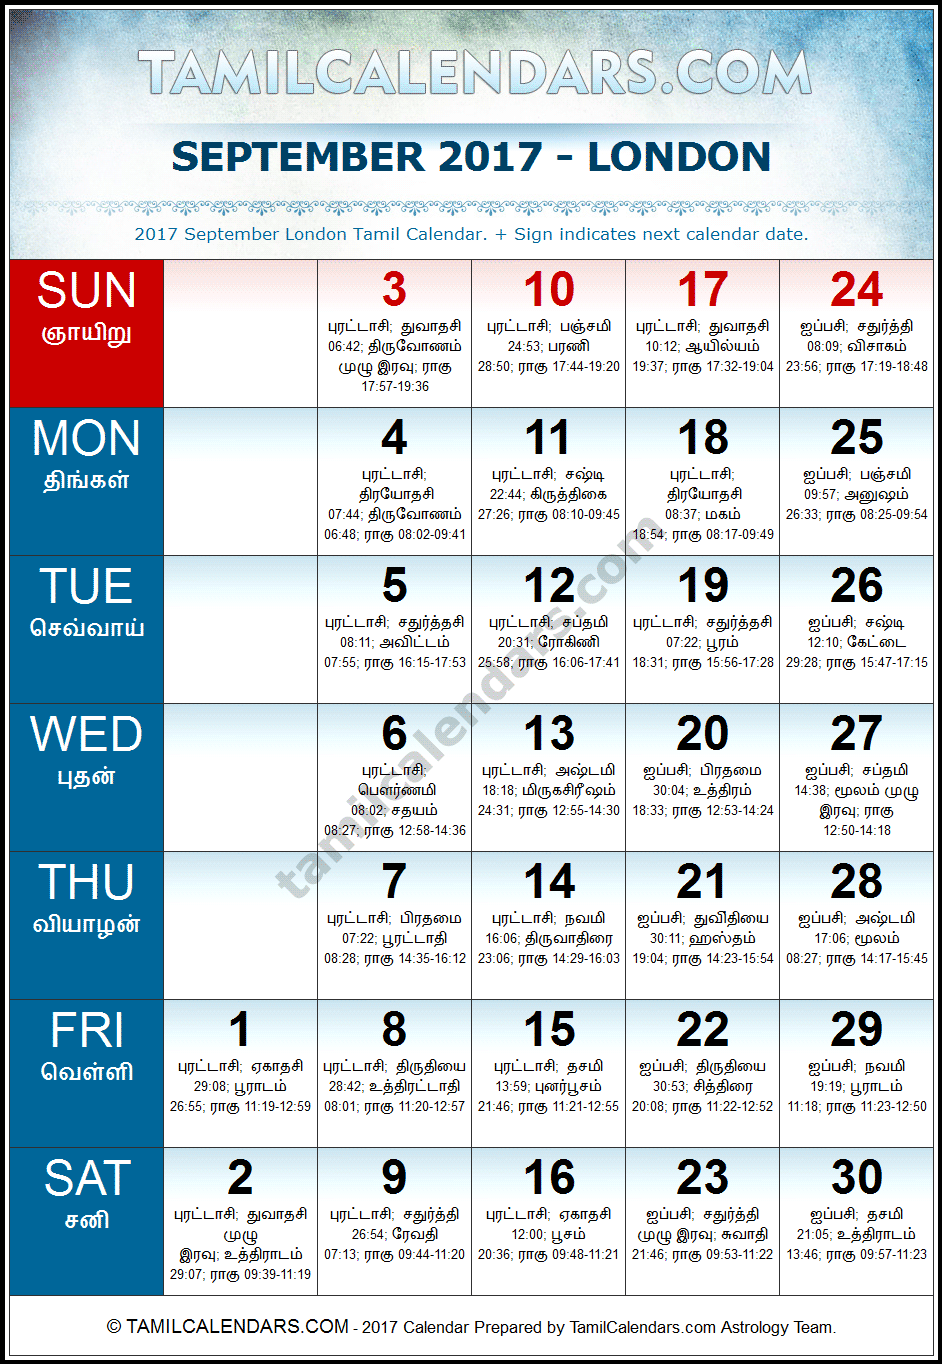 September 2017 Tamil Calendar for London, UK